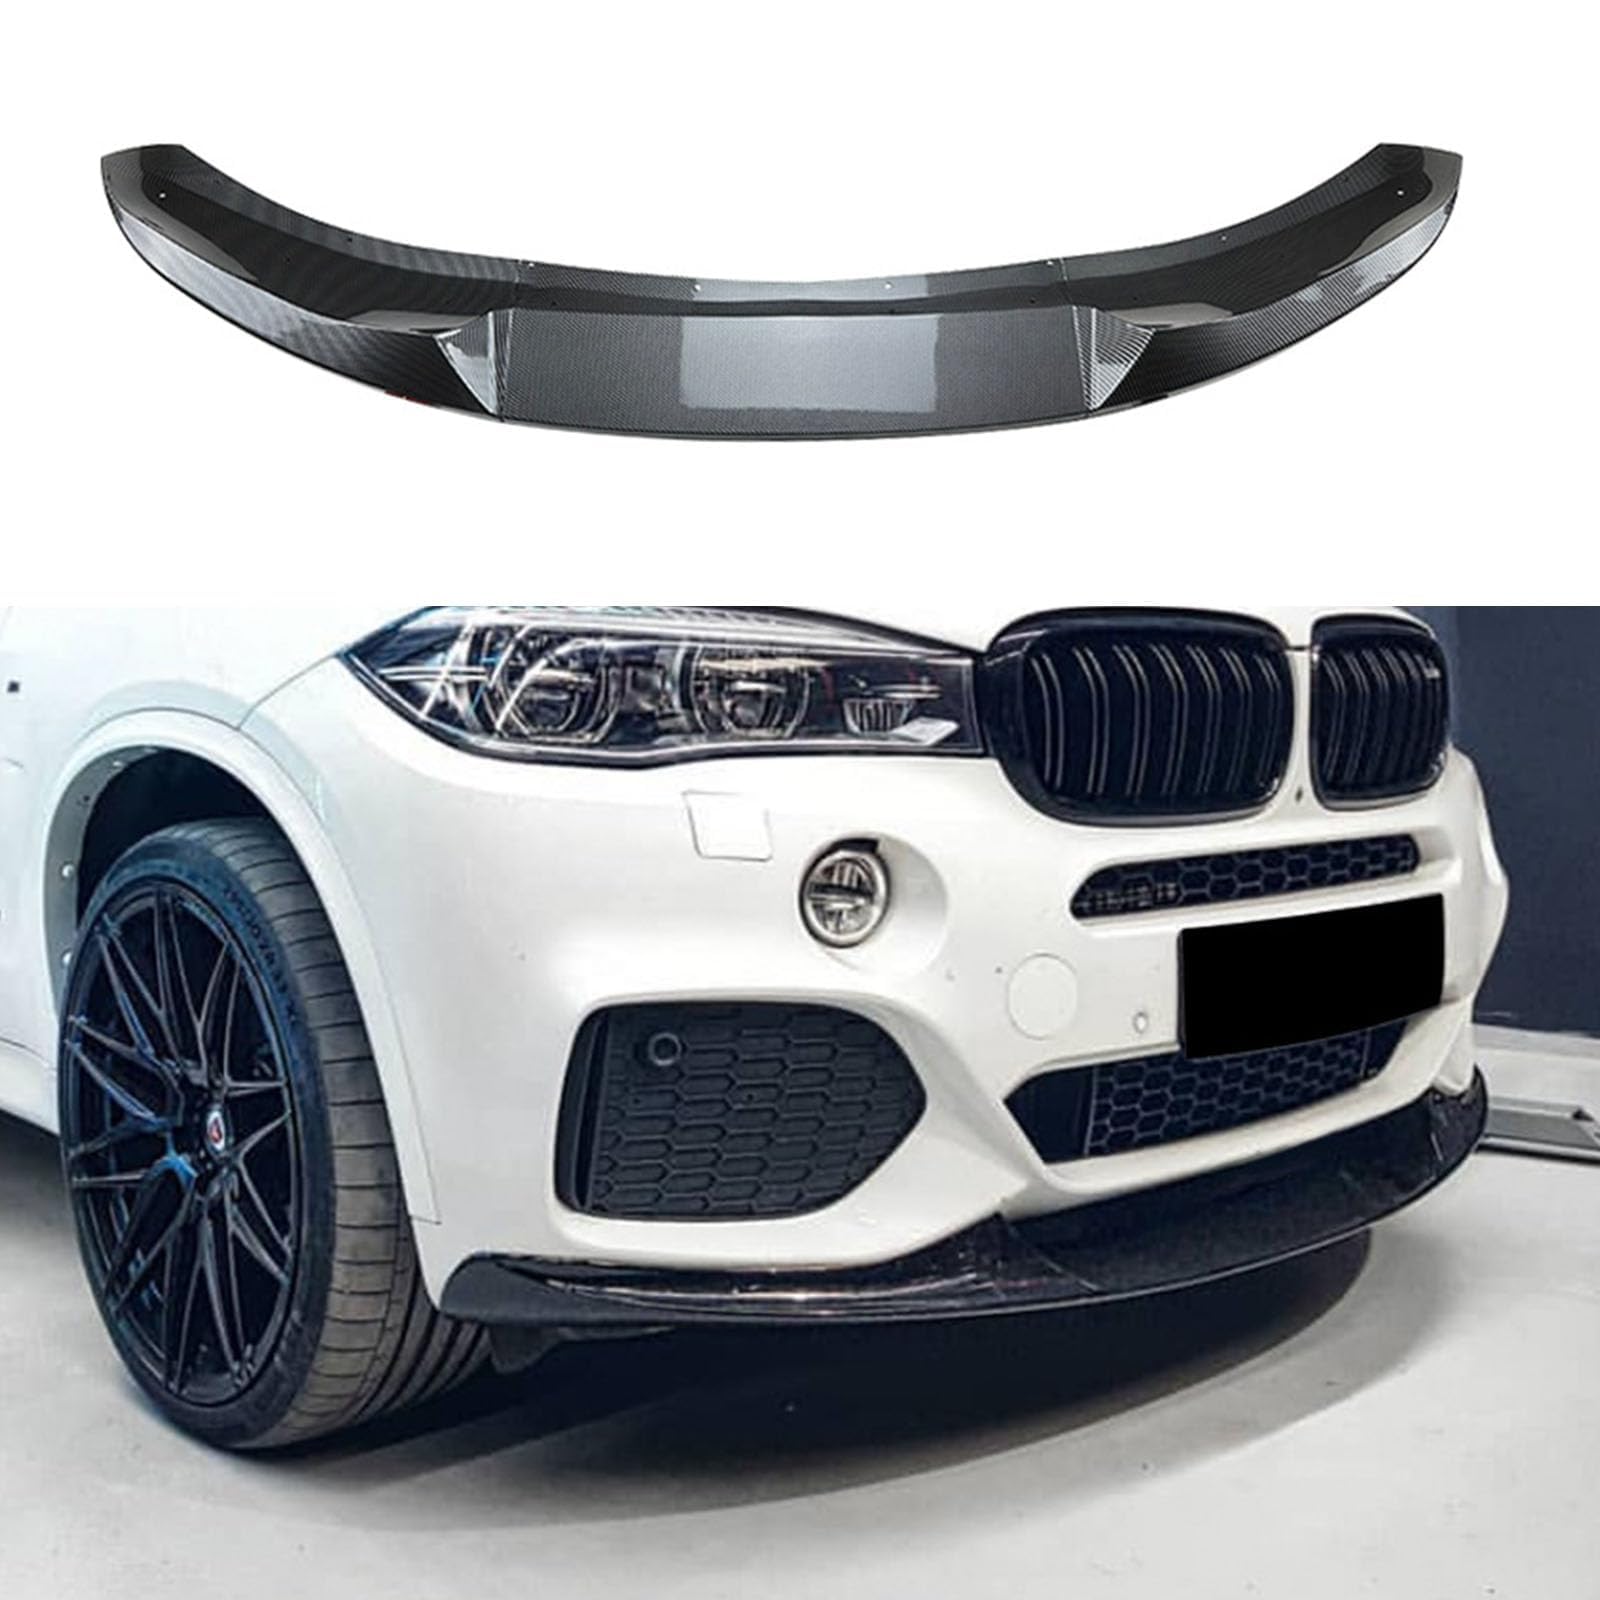 Auto Frontspoiler für BMW X5 F15 M Sport MP 2014-2017 2018,Frontstoßstange Lippe Diffusor Splitter Wasserdicht Kratzfest Kinn Protector Karosserie Zubehör,B-Carbon Fiber Pattern von ZHENWANG